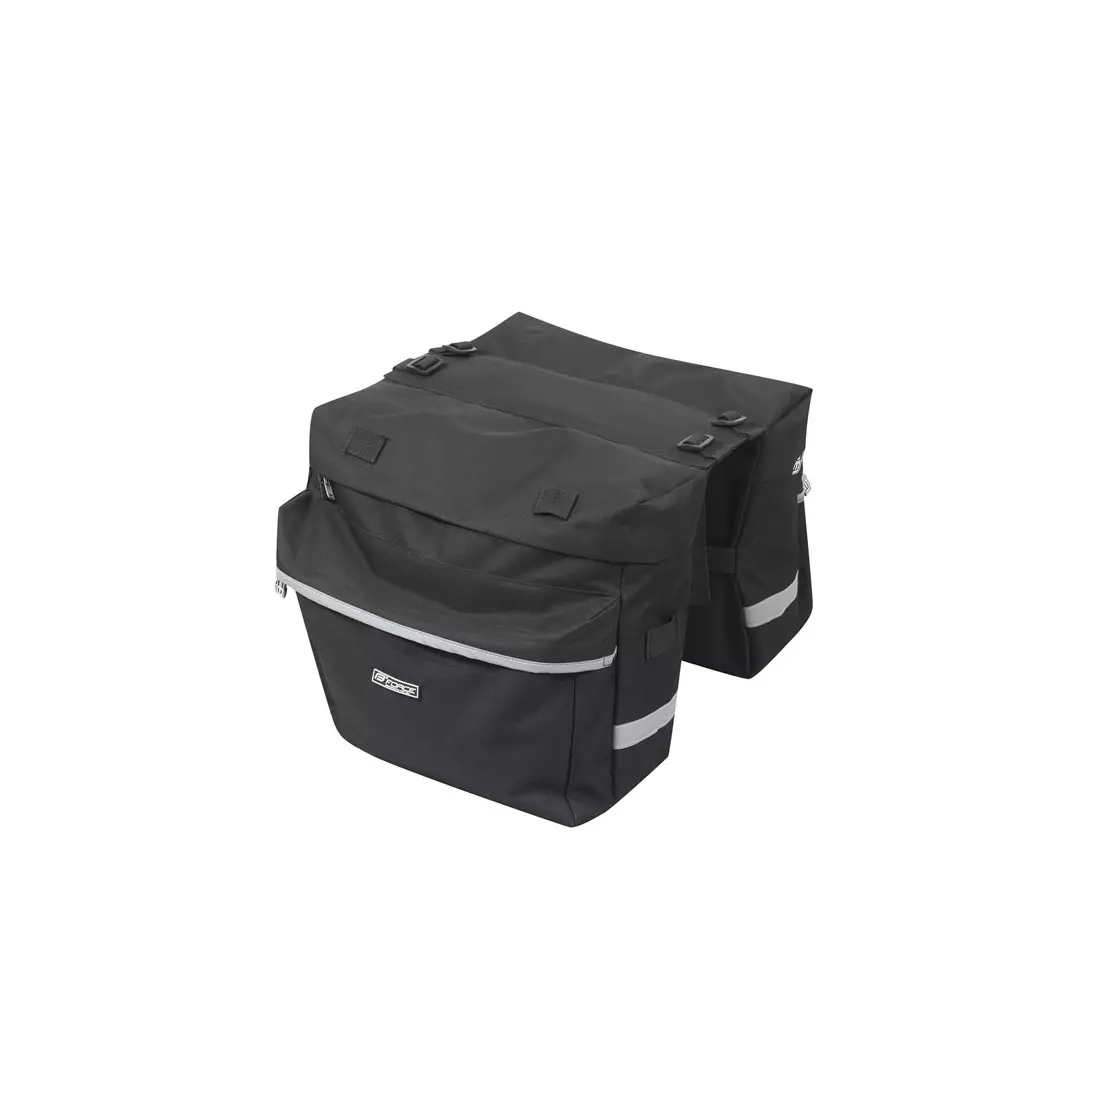 FORCE Geantă dublă pentru bagaje 2x 10L negru